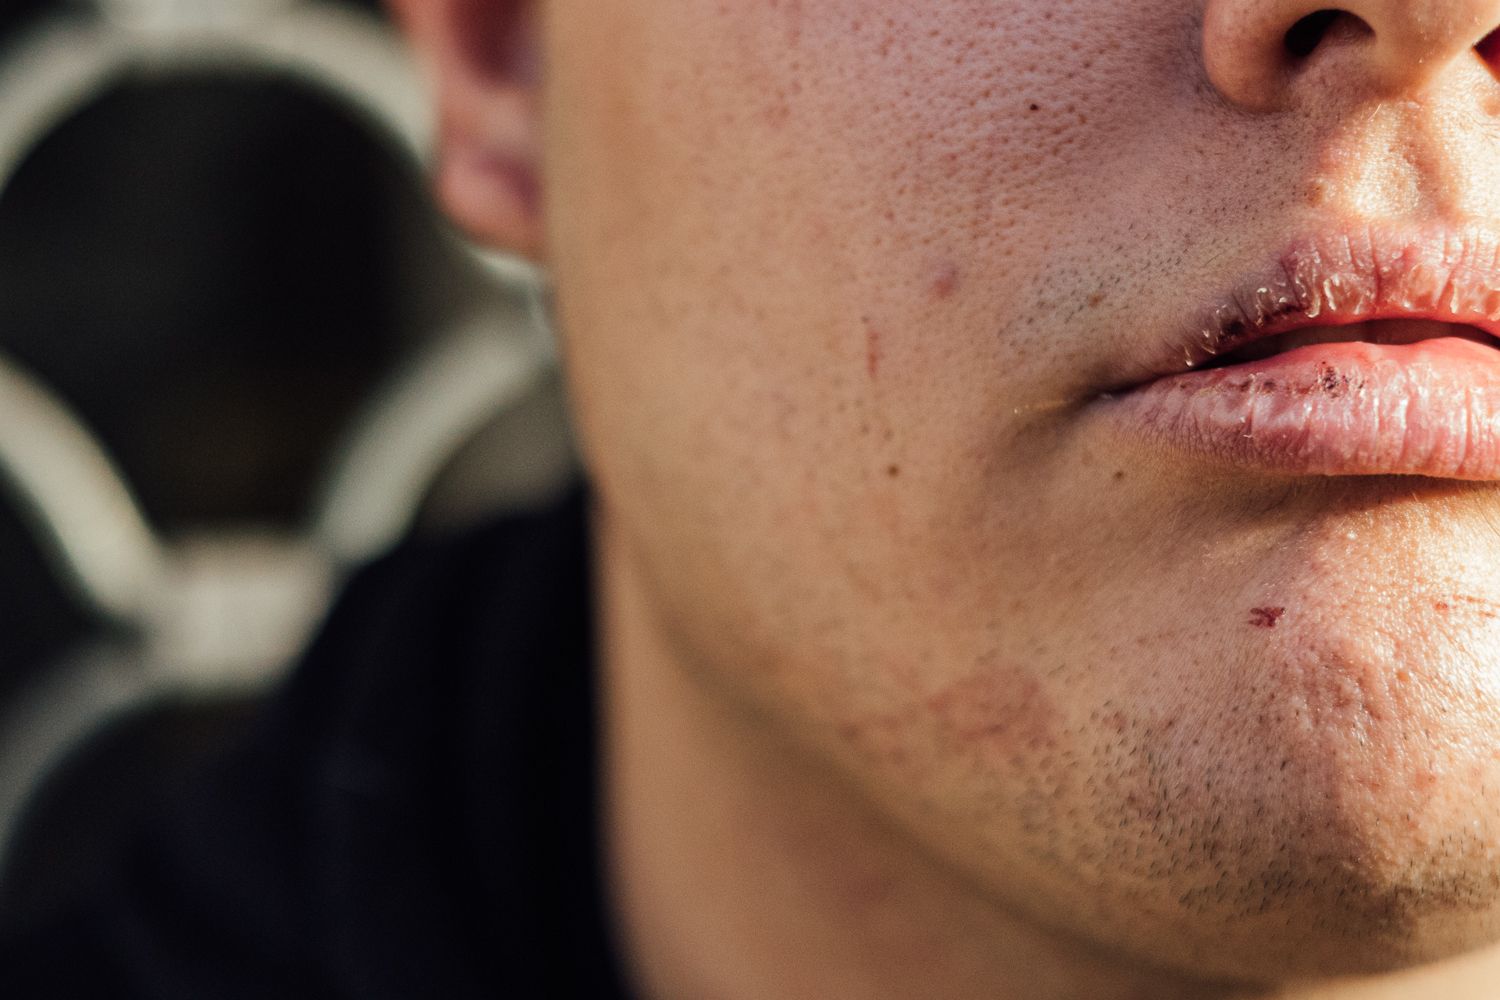 Rostro de Emi, el joven agredido en Jerez, tras la paliza.